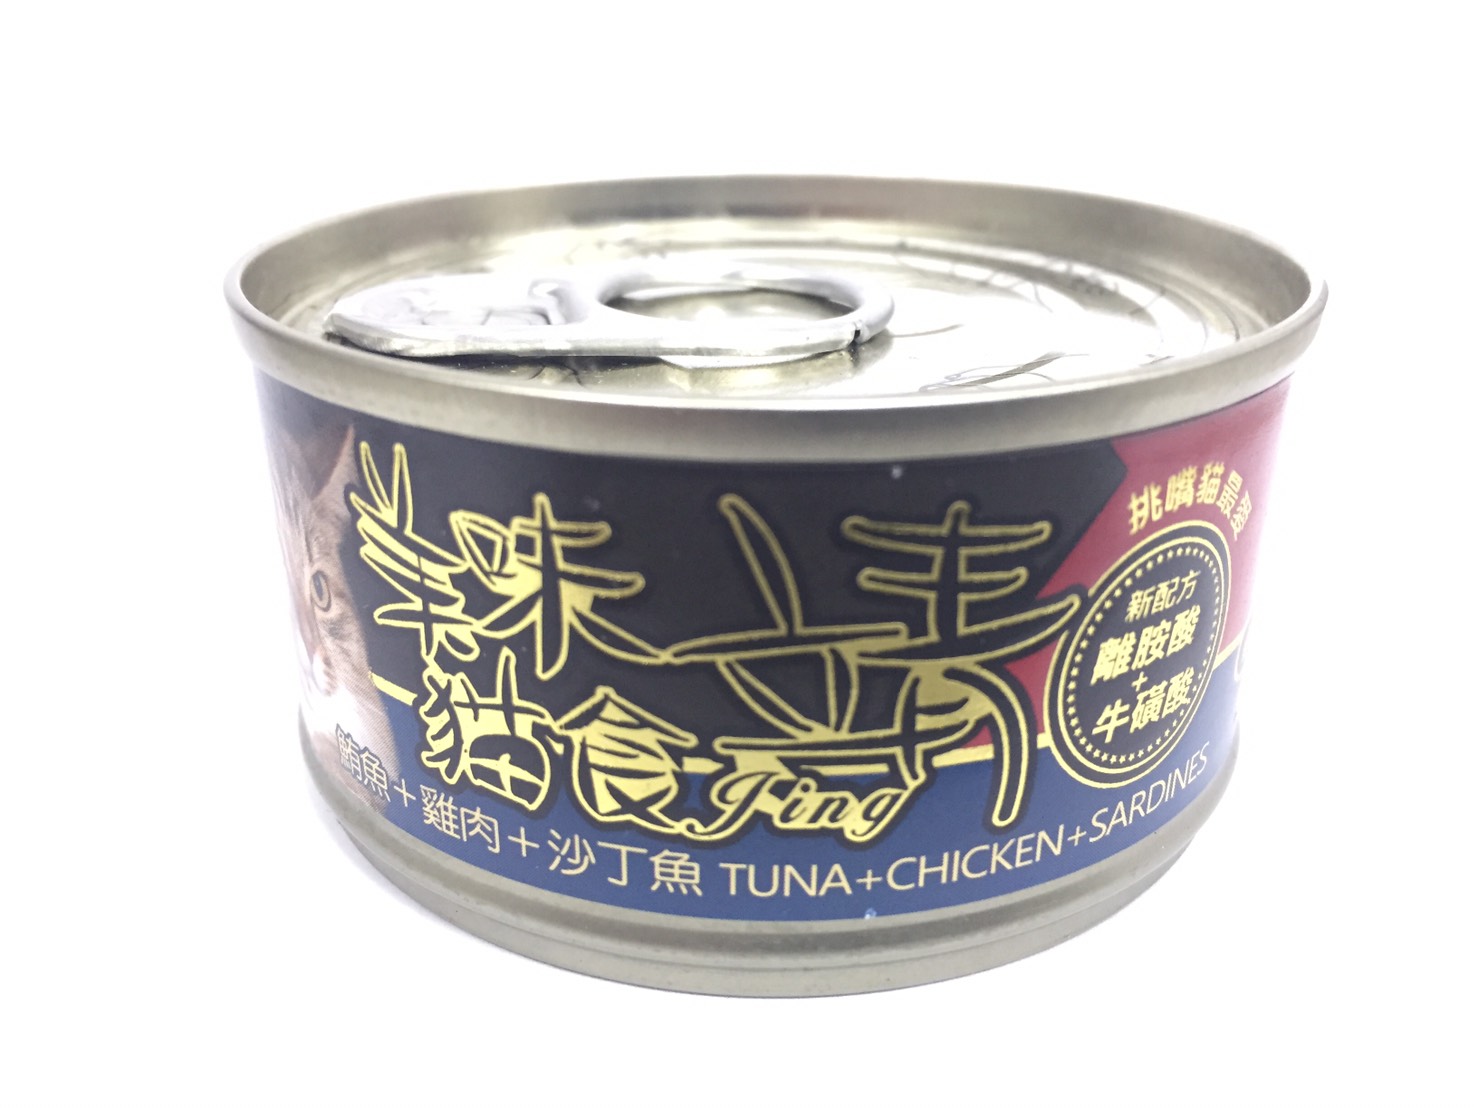 靖特級貓罐-鮪魚+雞肉+沙丁魚
Jing cat can-tuna+chicken+sardines